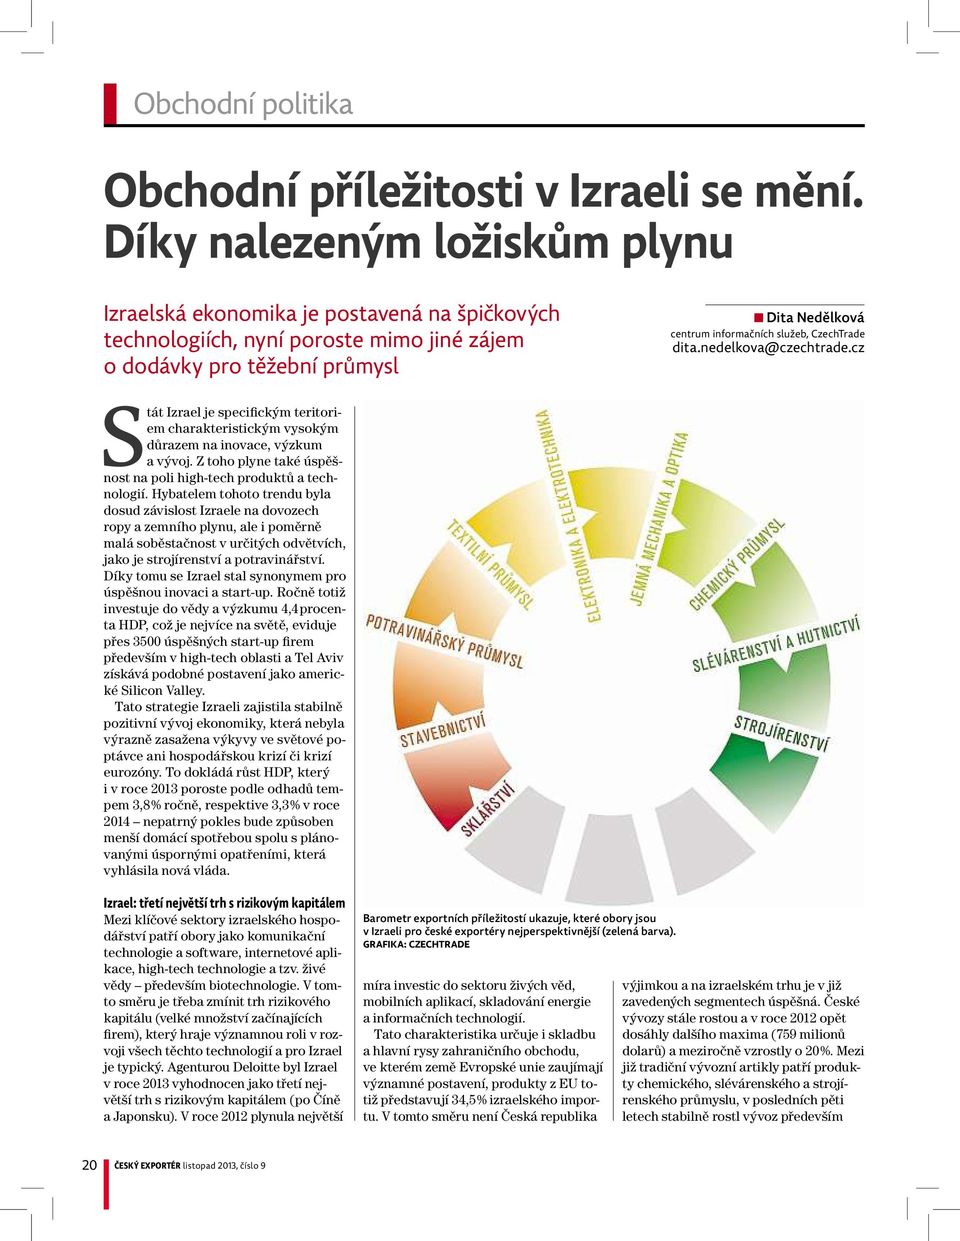 CzechTrade dita.nedelkova@czechtrade.cz Stát Izrael je specifickým teritoriem charakteristickým vysokým důrazem na inovace, výzkum avývoj.